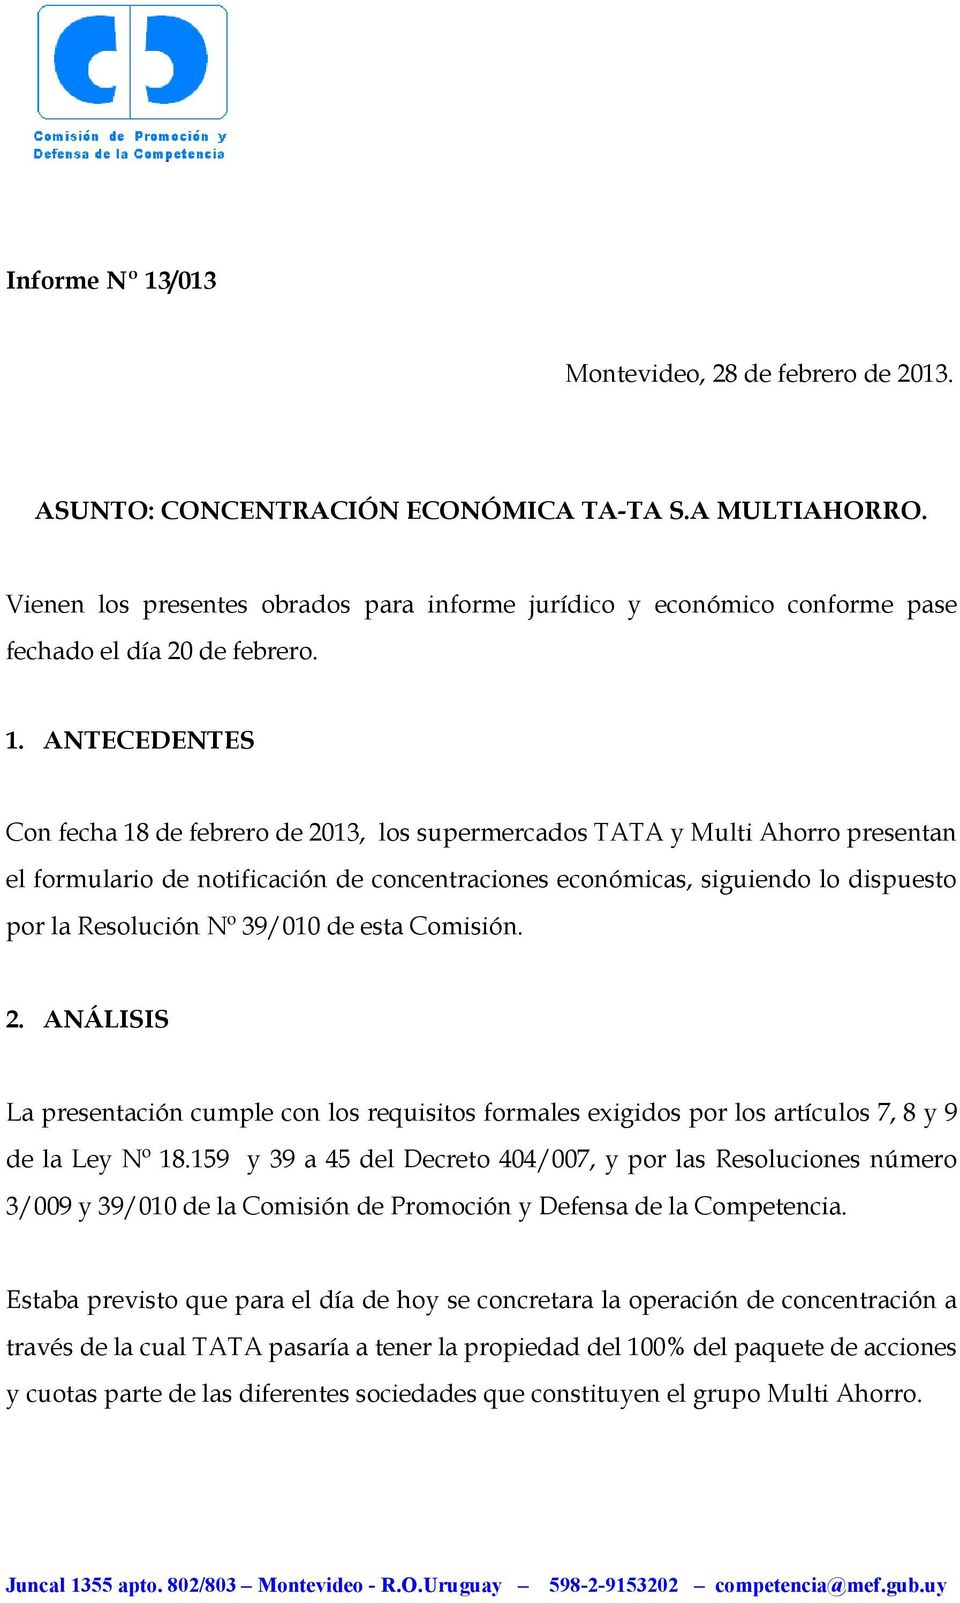 ANTECEDENTES Con fecha 18 de febrero de 2013, los supermercados TATA y Multi Ahorro presentan el formulario de notificación de concentraciones económicas, siguiendo lo dispuesto por la Resolución Nº